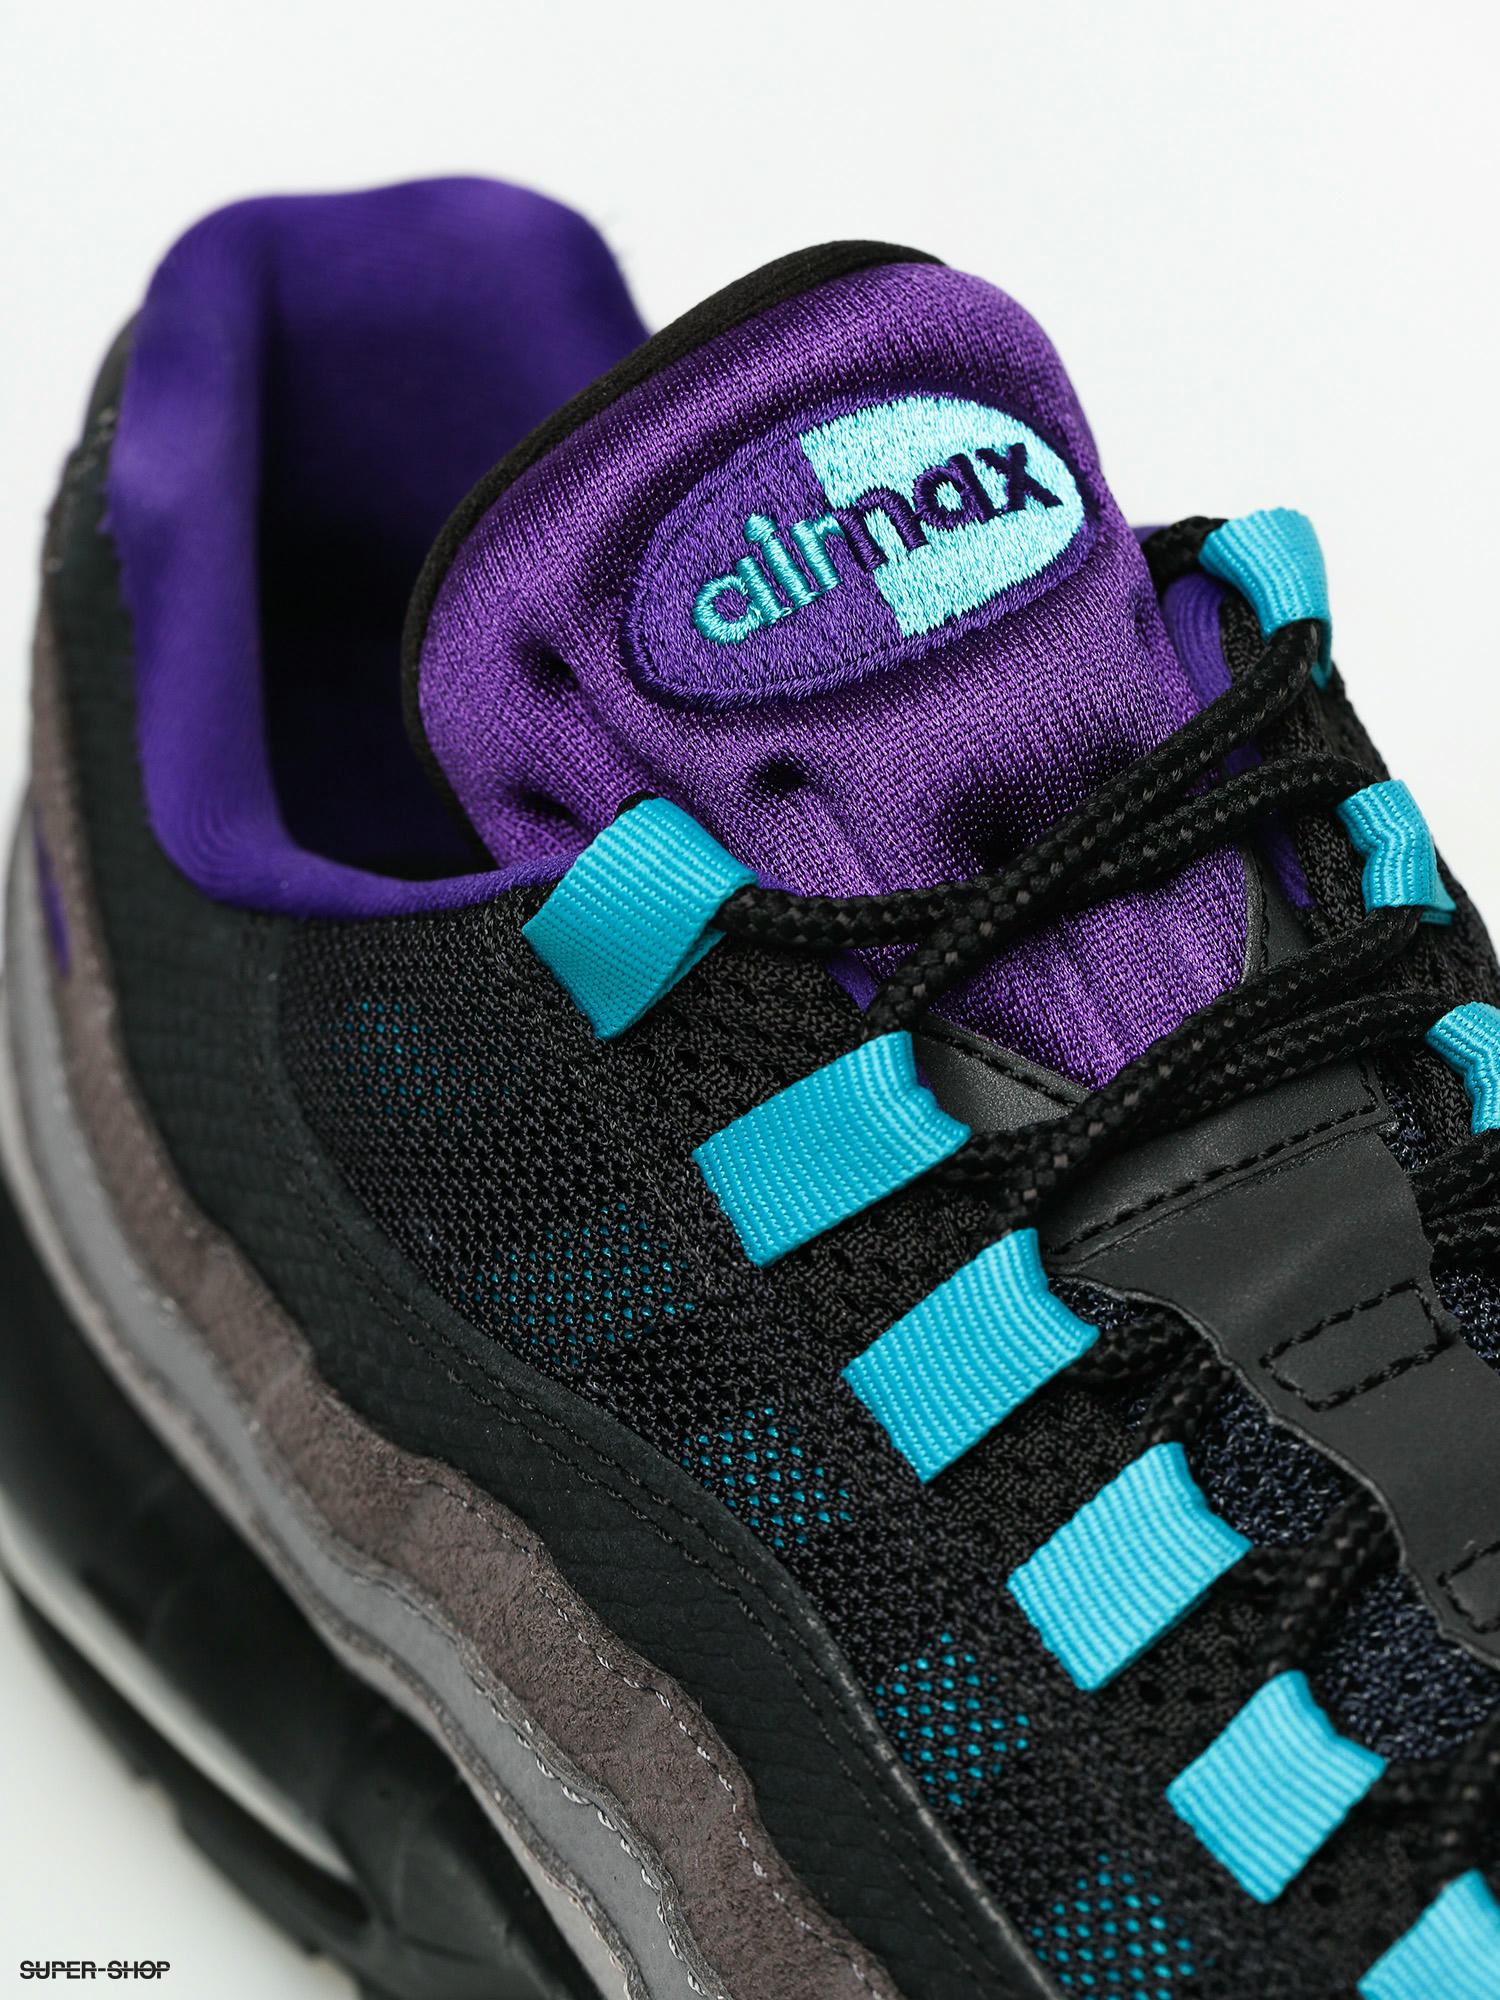 air max 95 court purple